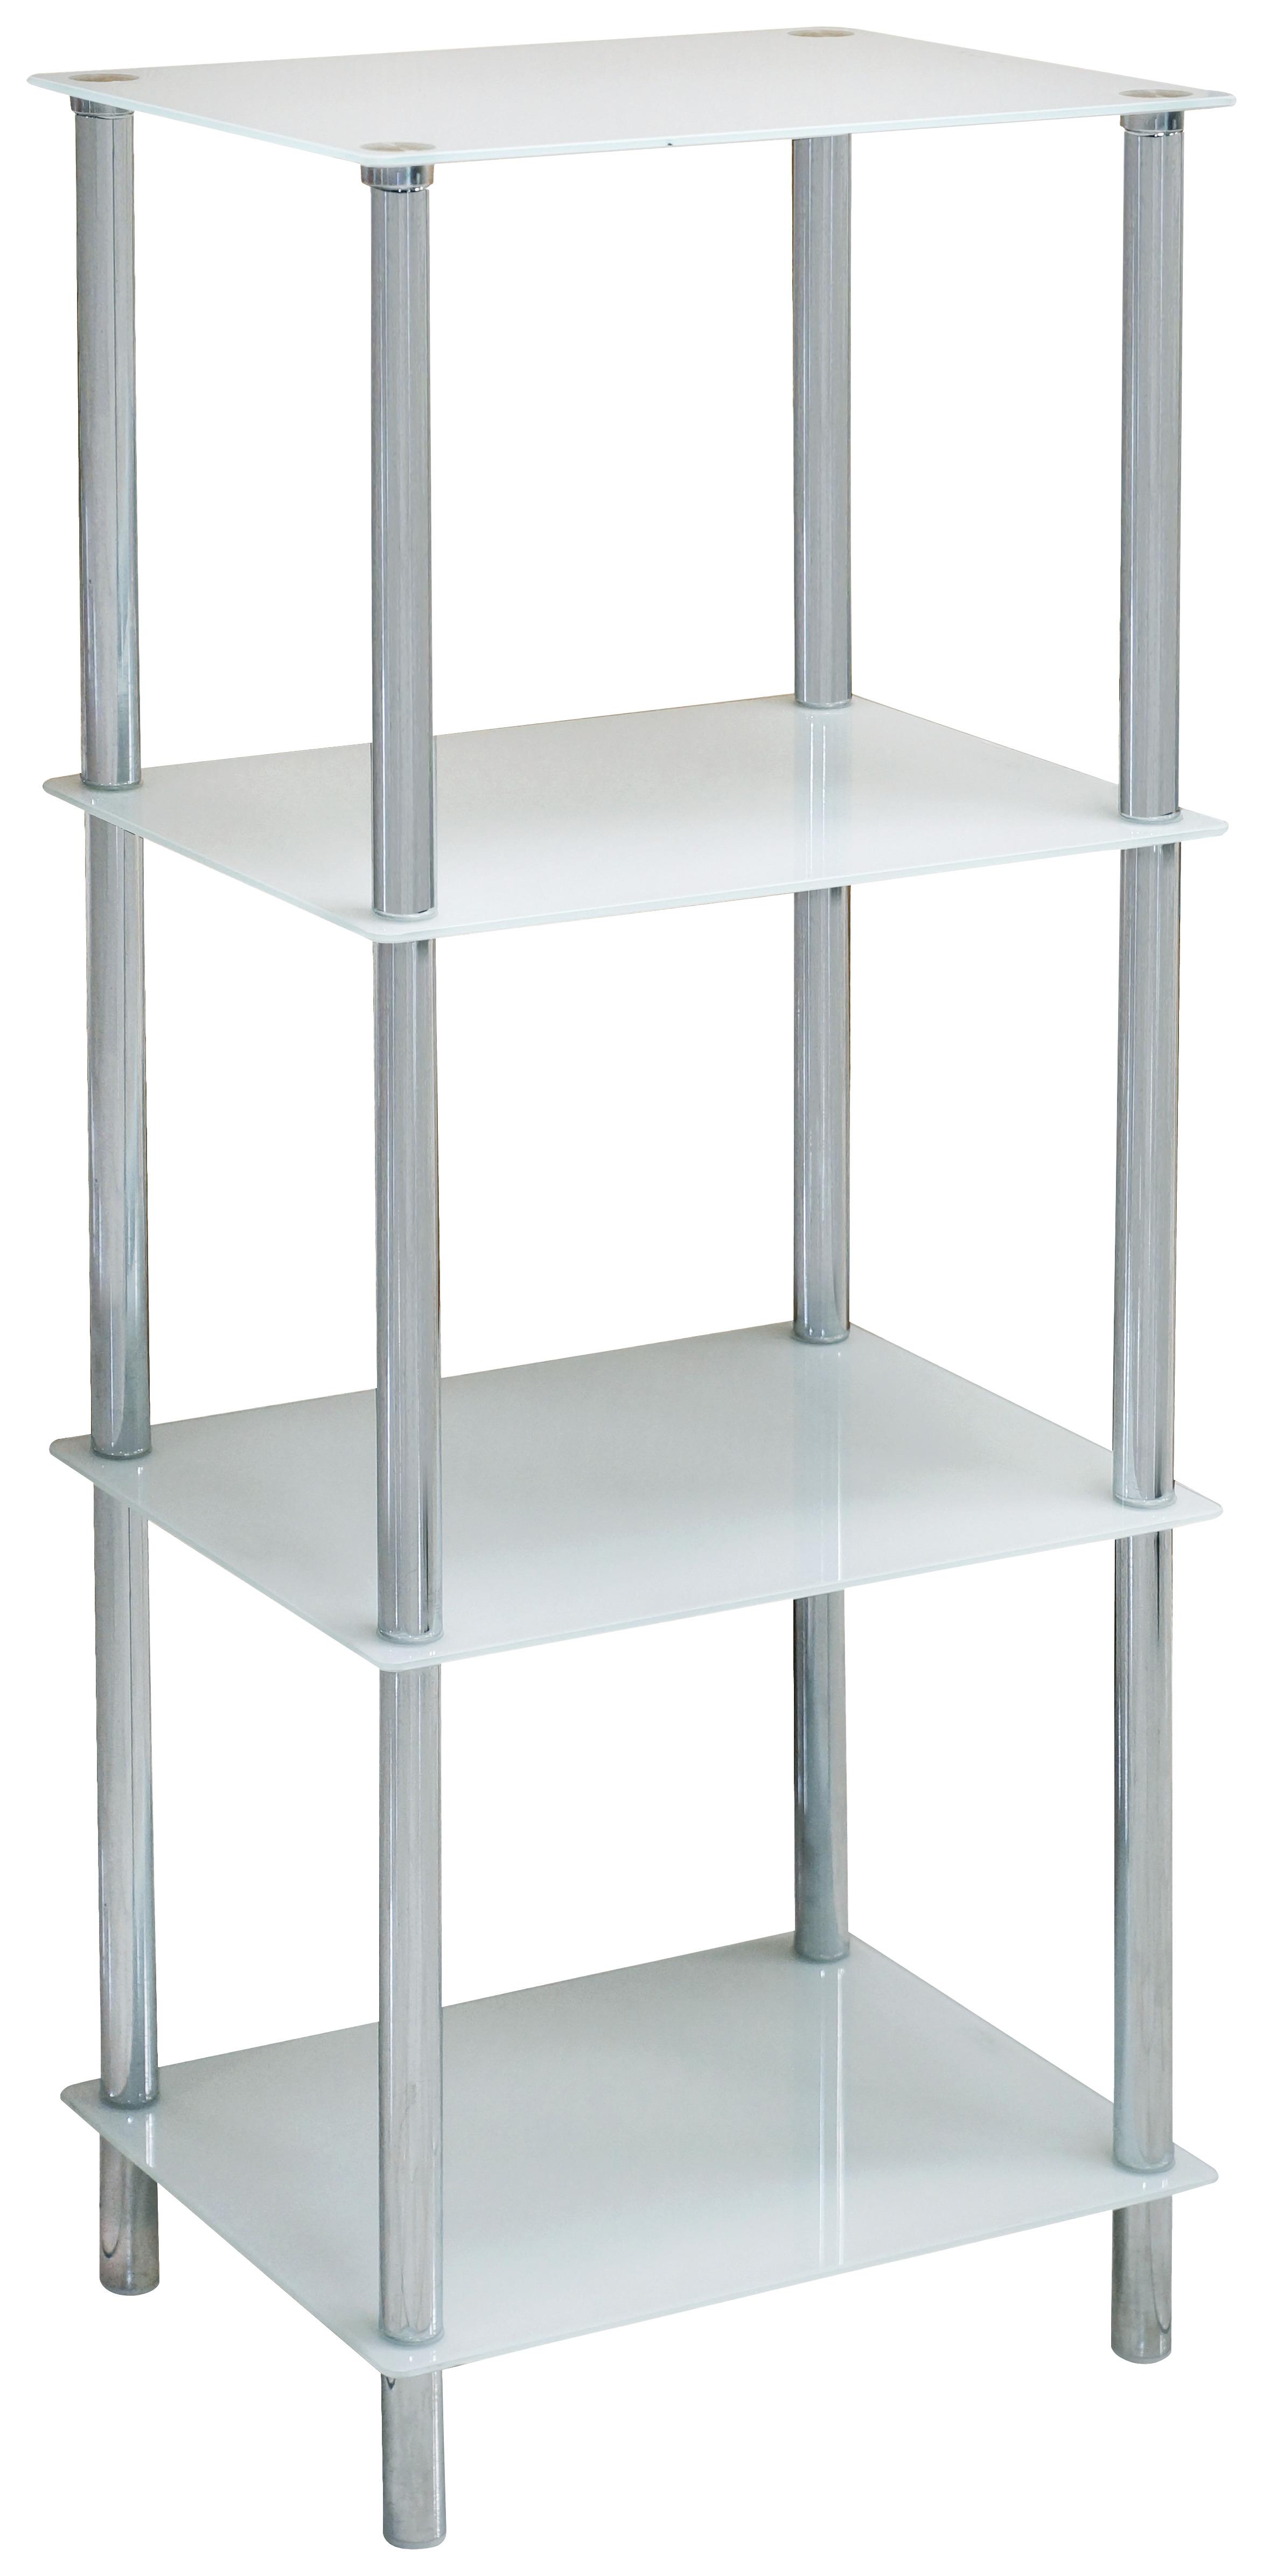 Regal in Weiss/Chromfarben - Chromfarben/Weiss, Modern, Glas/Metall (40/100/30cm) - Modern Living